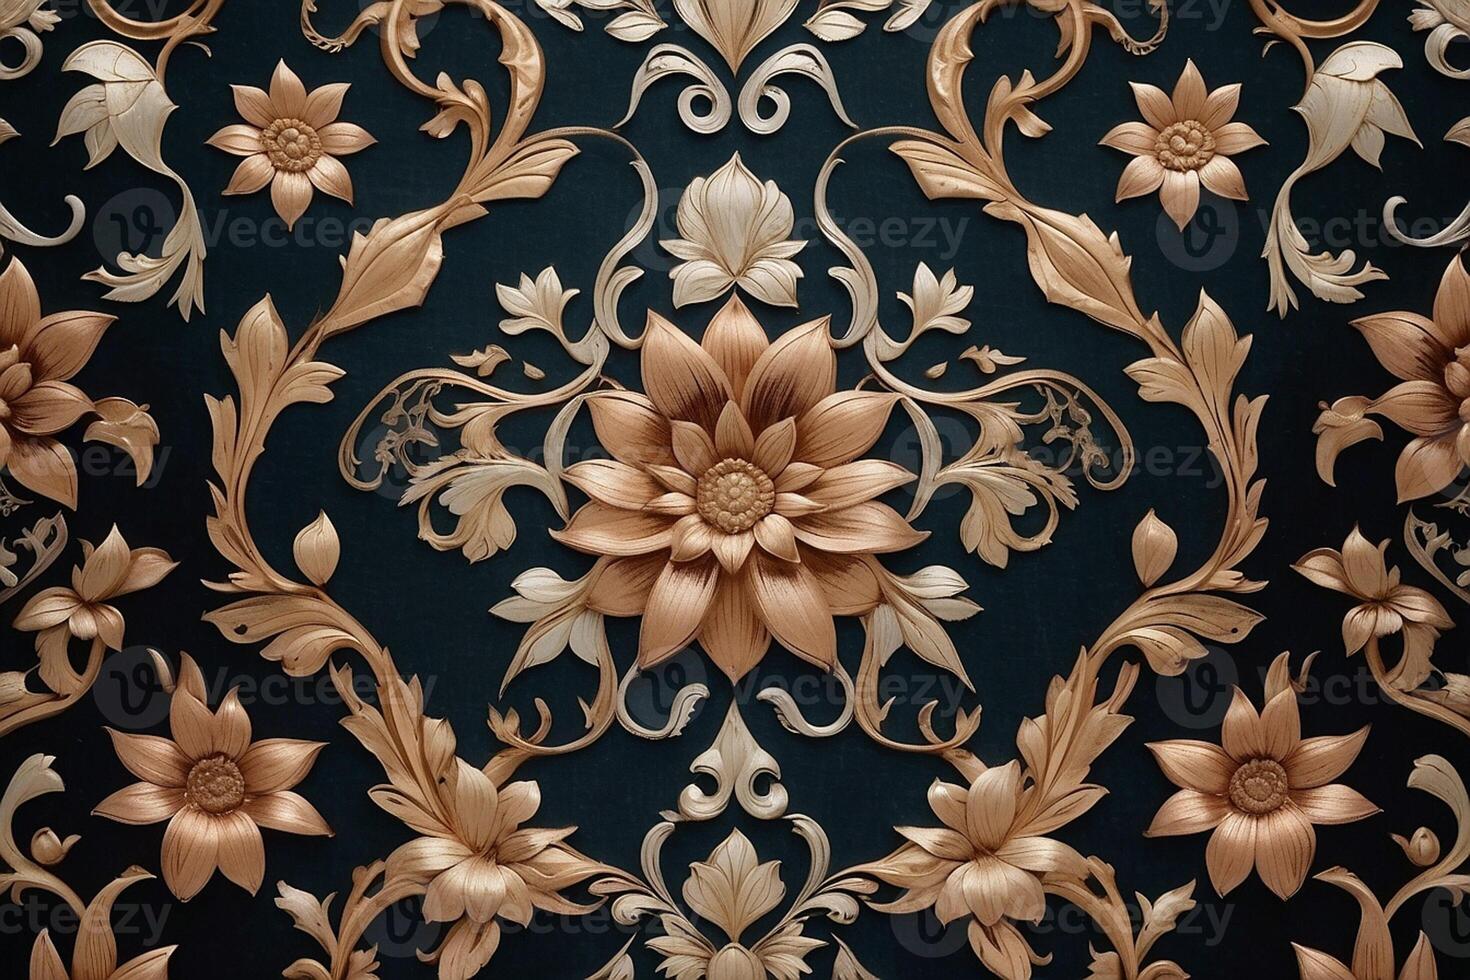 golden floral pattern on dark blue background photo